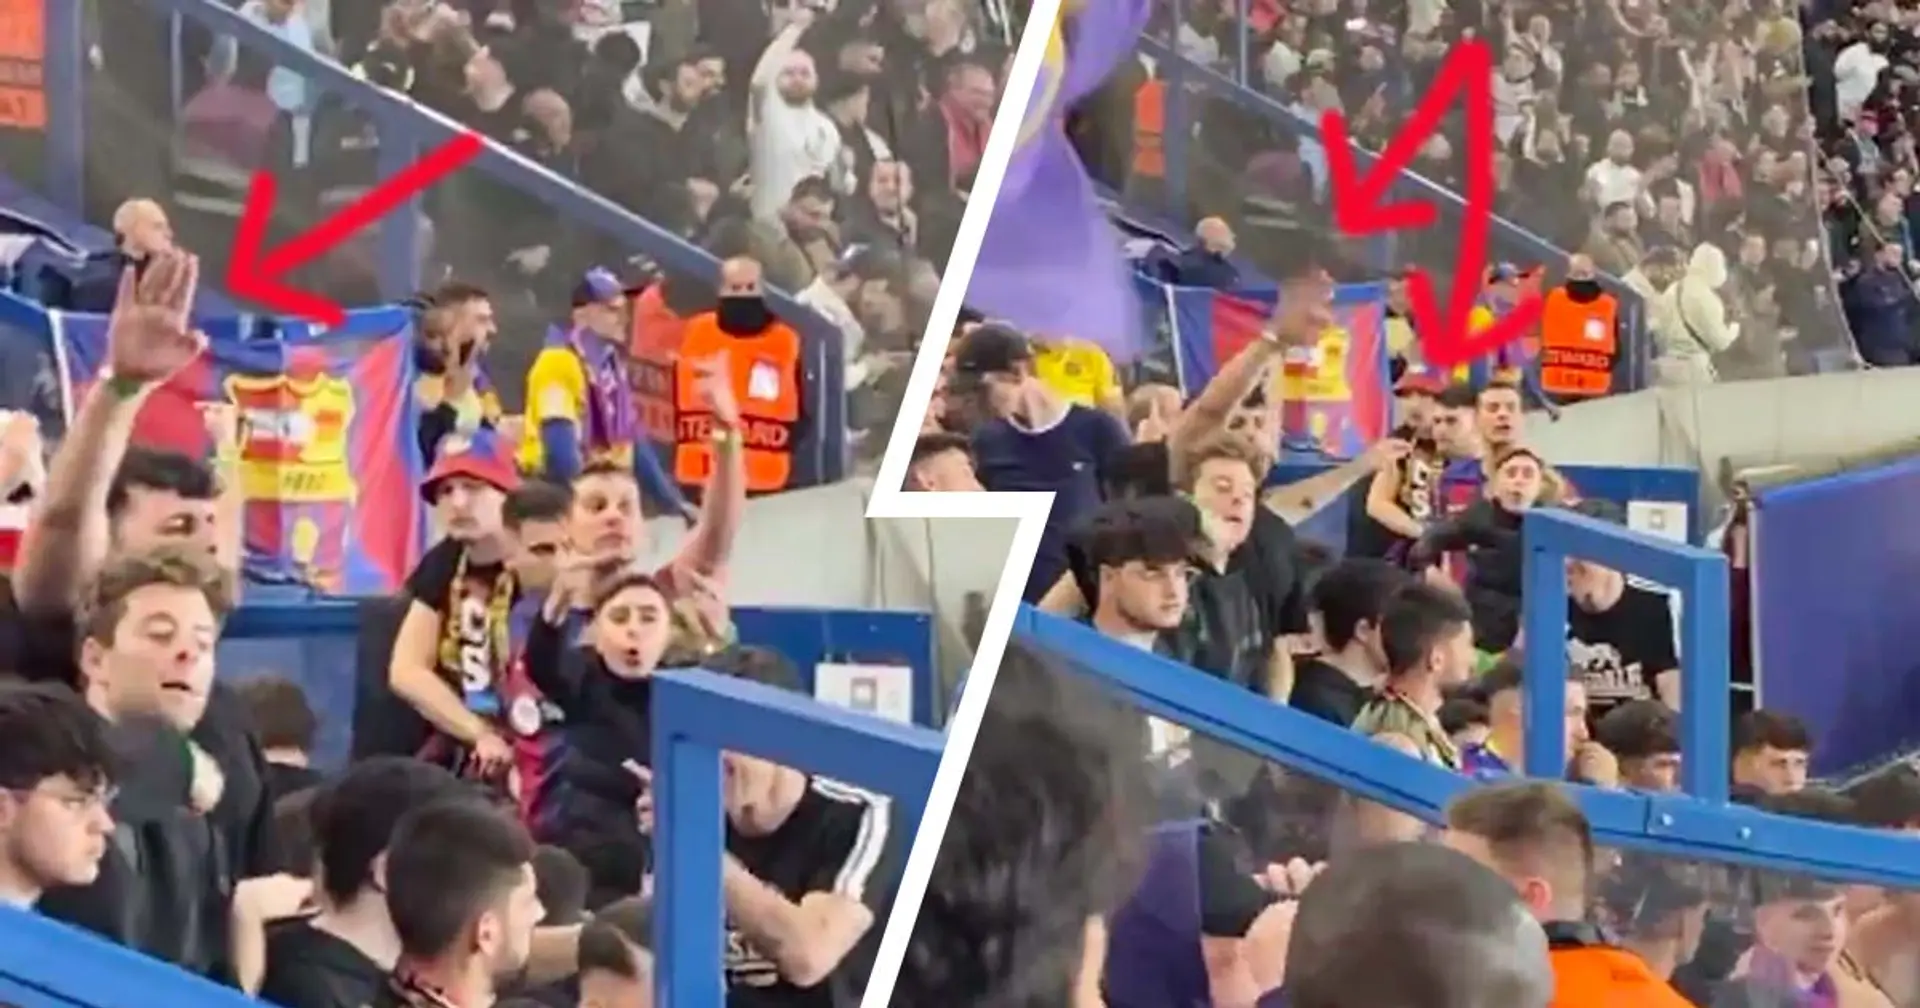 Des supporters du Barça ont fait des saluts nazis et insulté de singes des parisiens au Parc des Princes